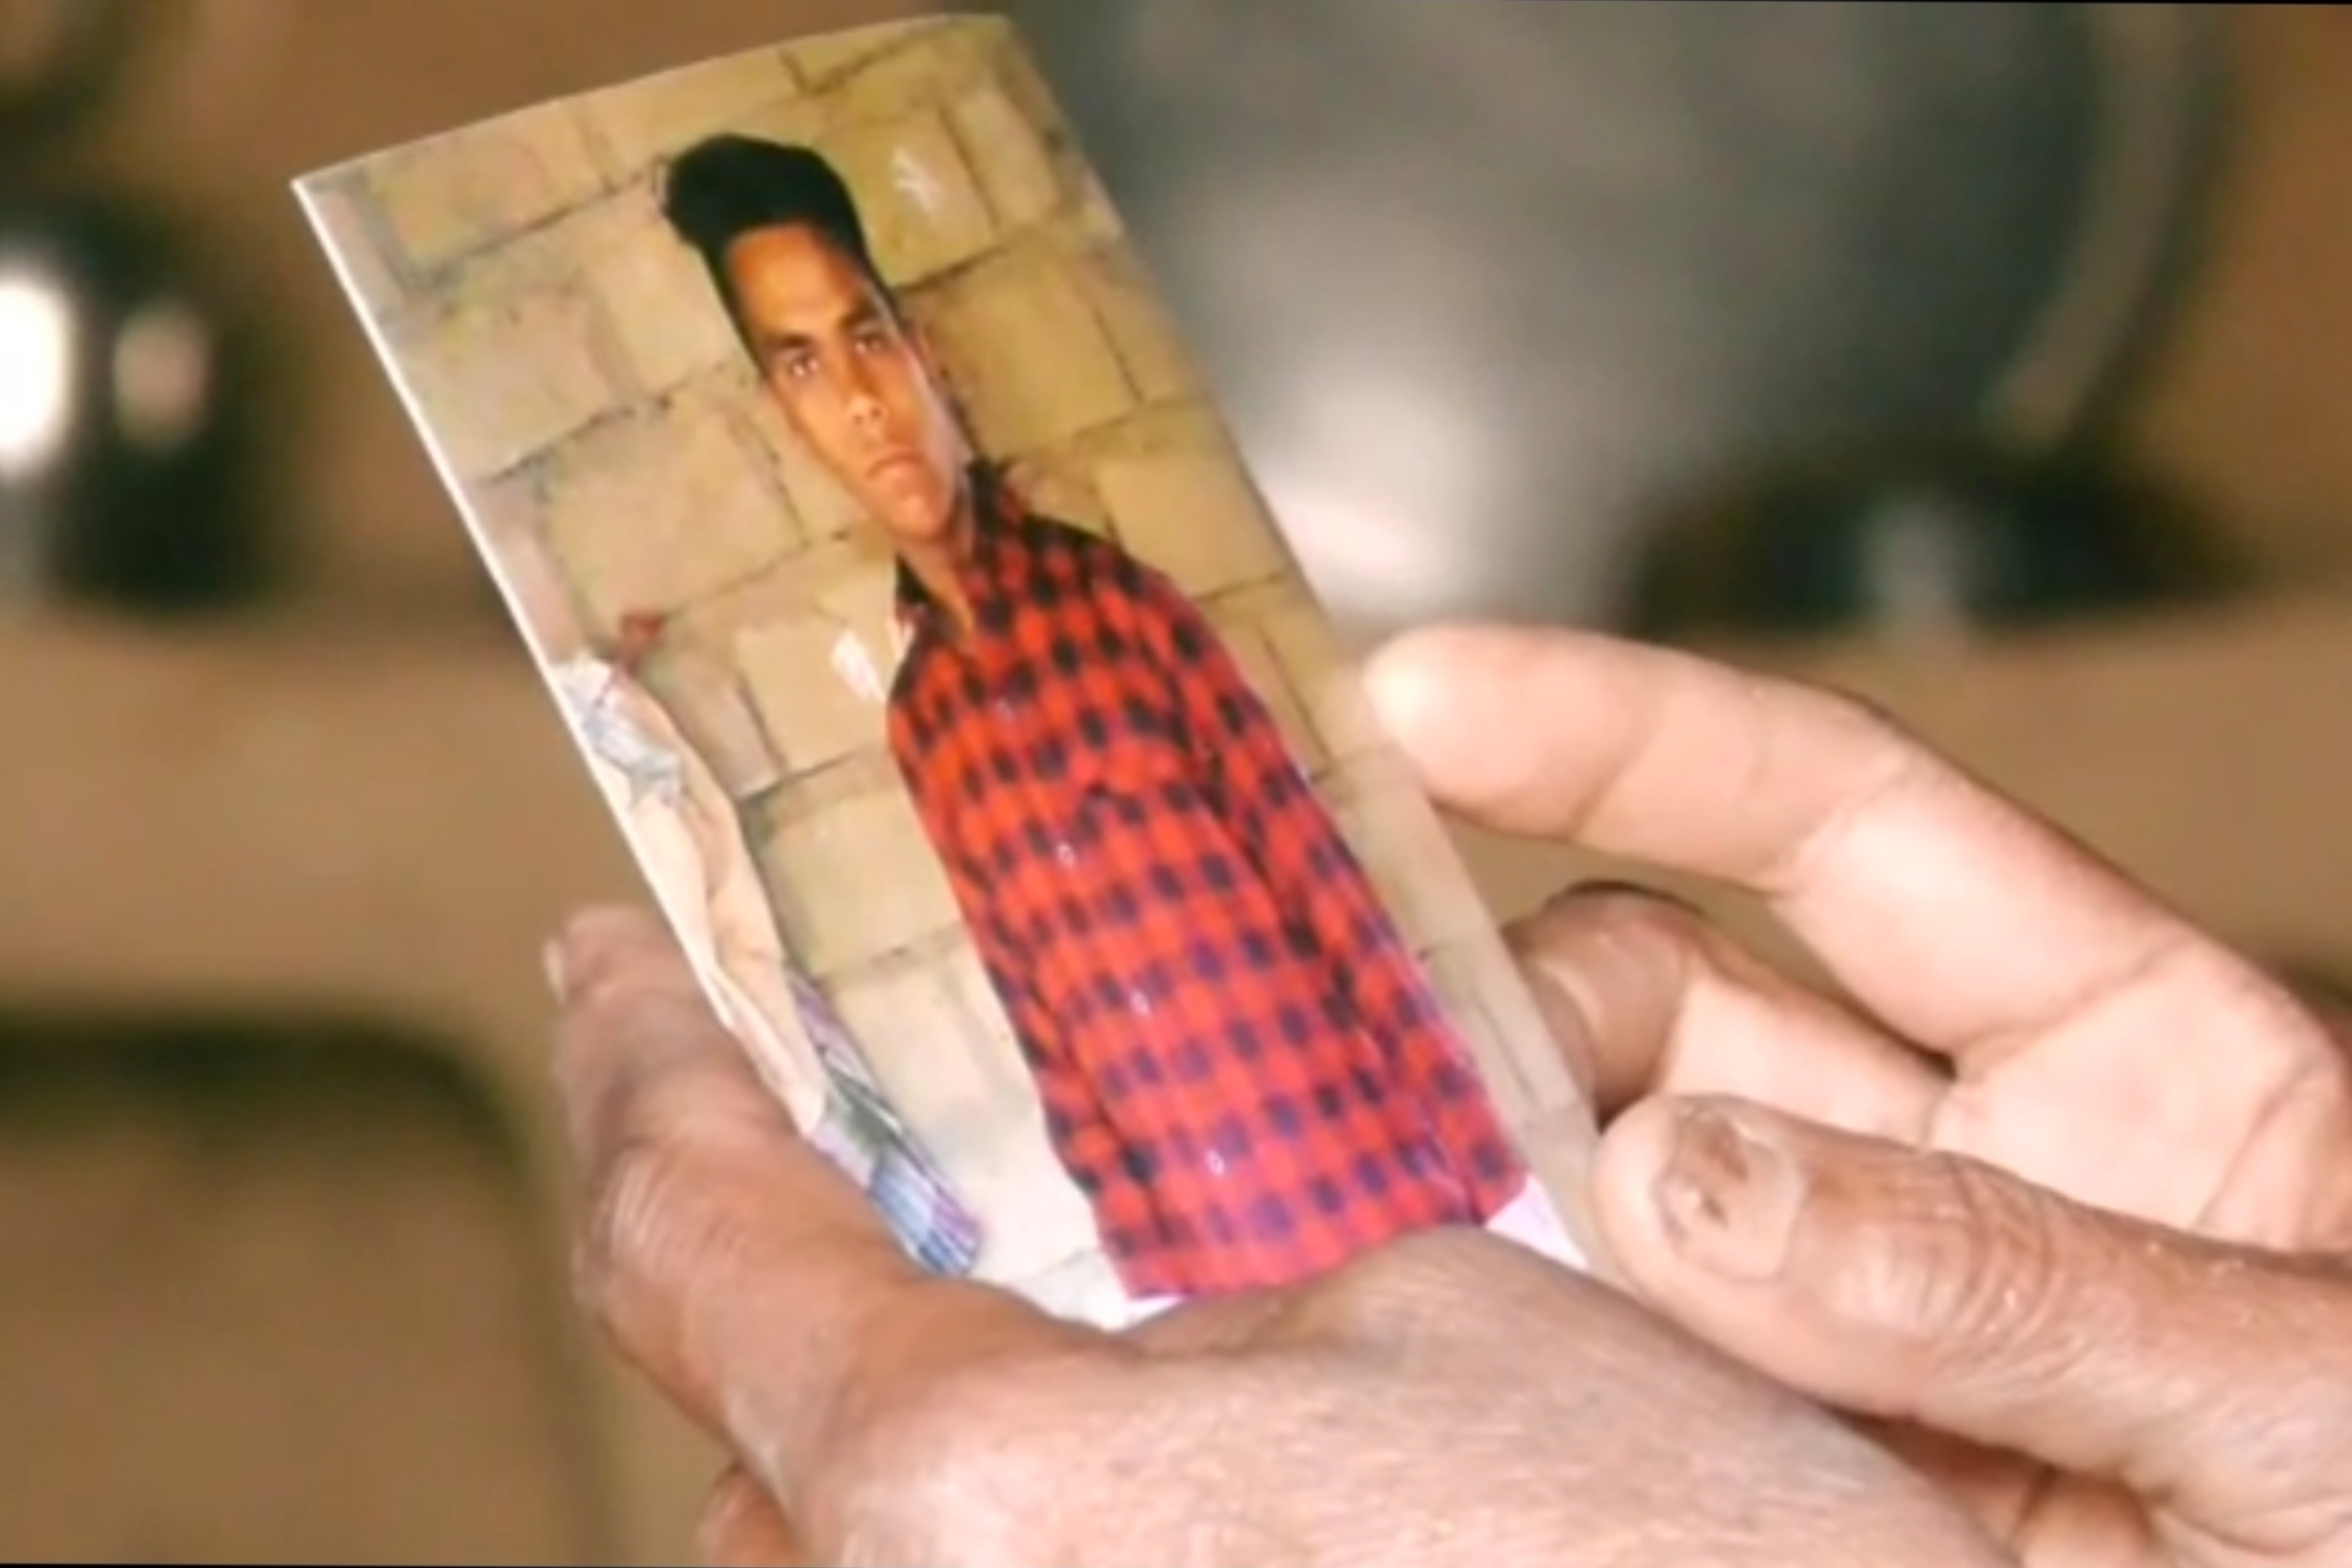 painful story of family of Gemara ram, Gemara ram flees to pakistan